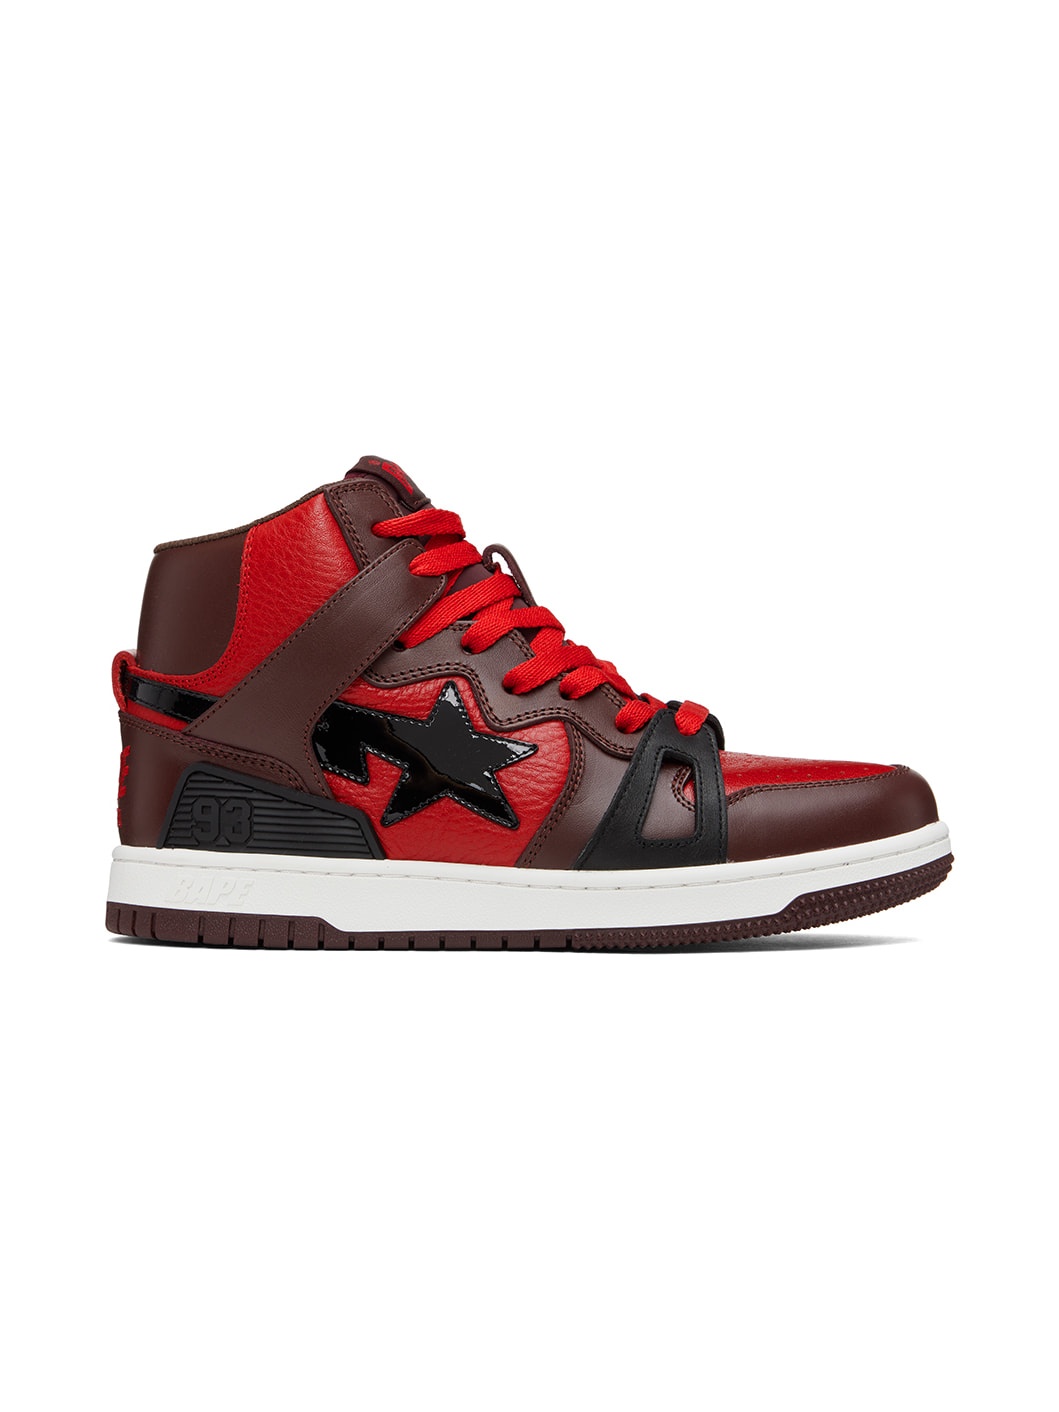 Red & Brown Sta 93 Hi Sneakers - 1